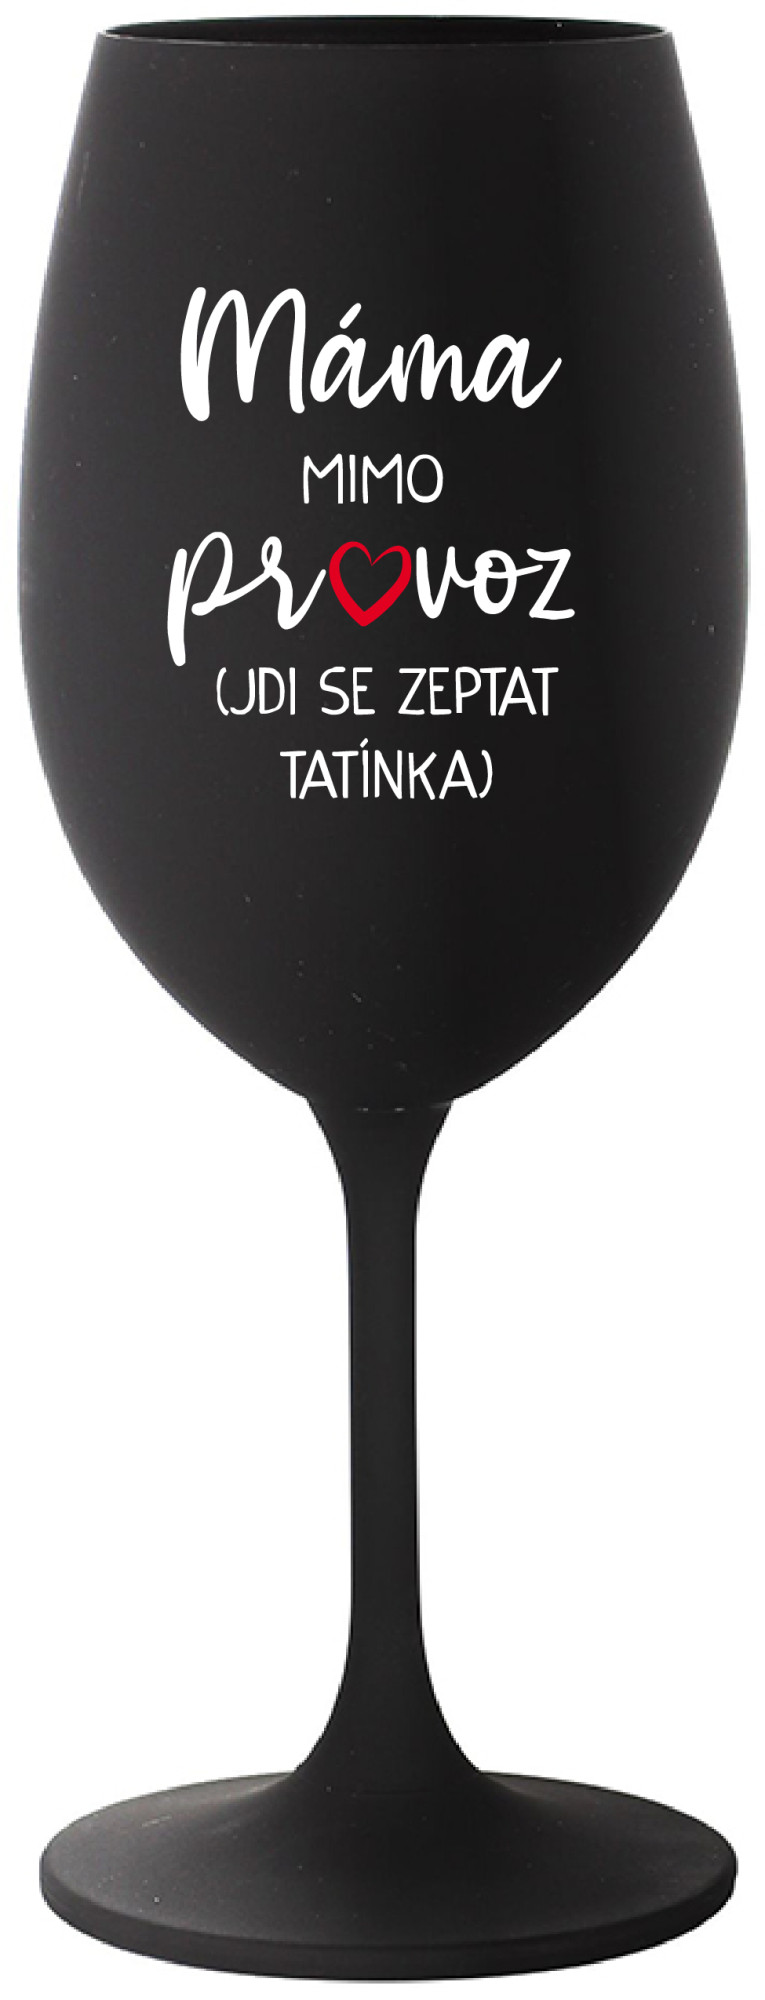 MÁMA MIMO PROVOZ (JDI SE ZEPTAT TATÍNKA) - černá sklenice na víno 350 ml